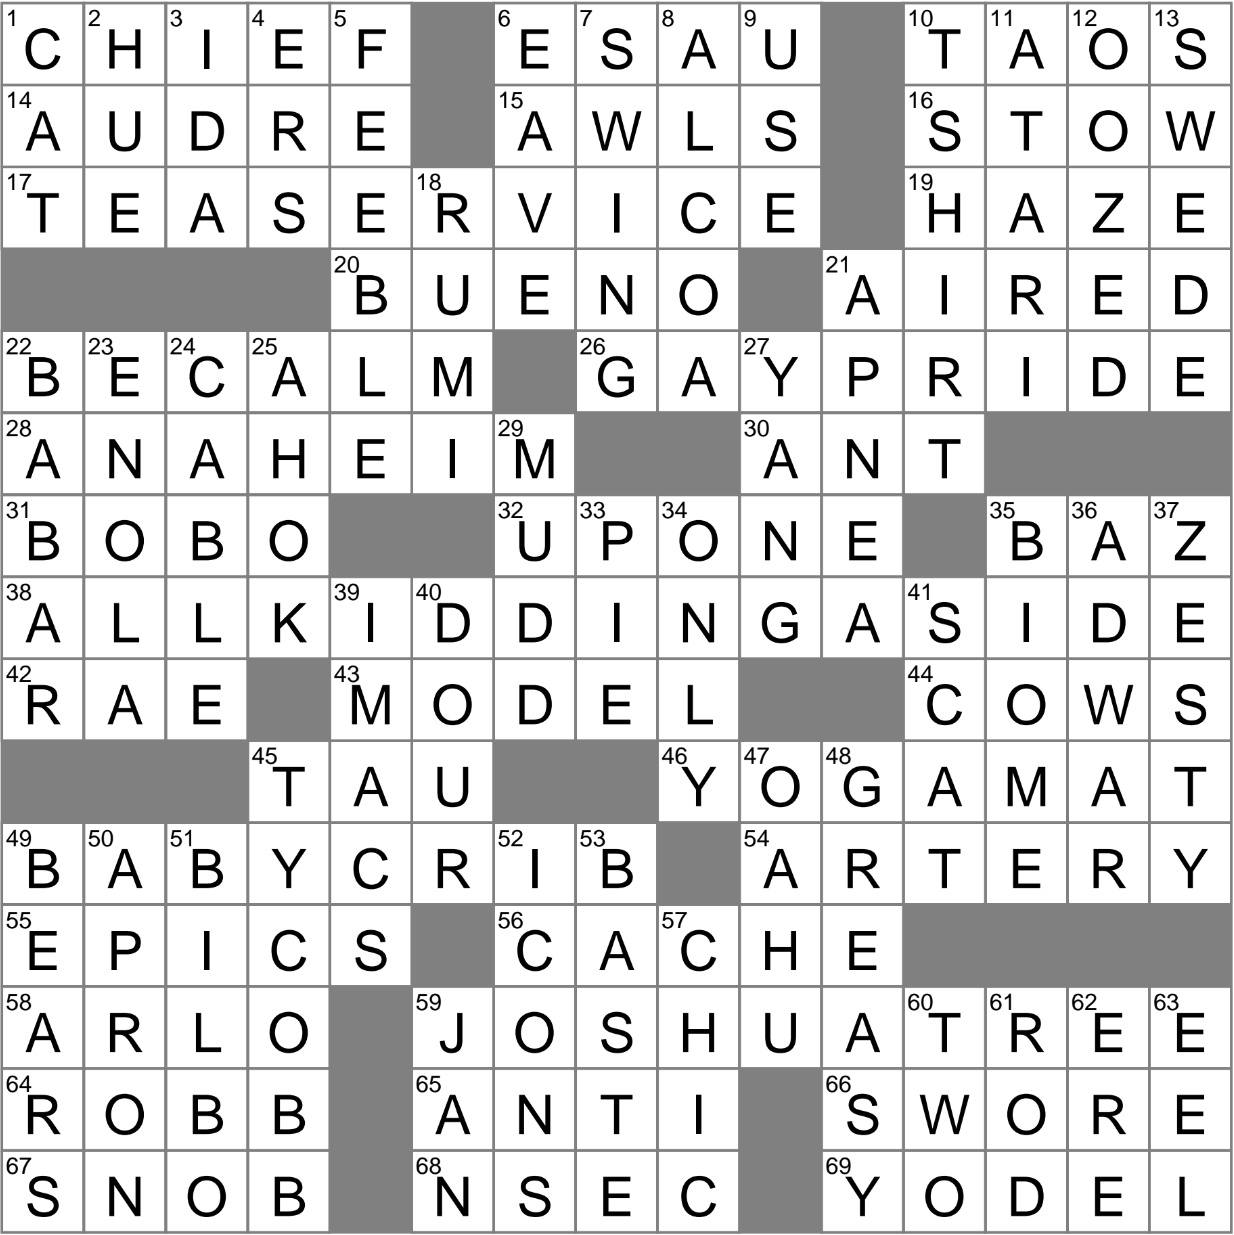 LA Times Crossword 6 Jul 22, Wednesday 